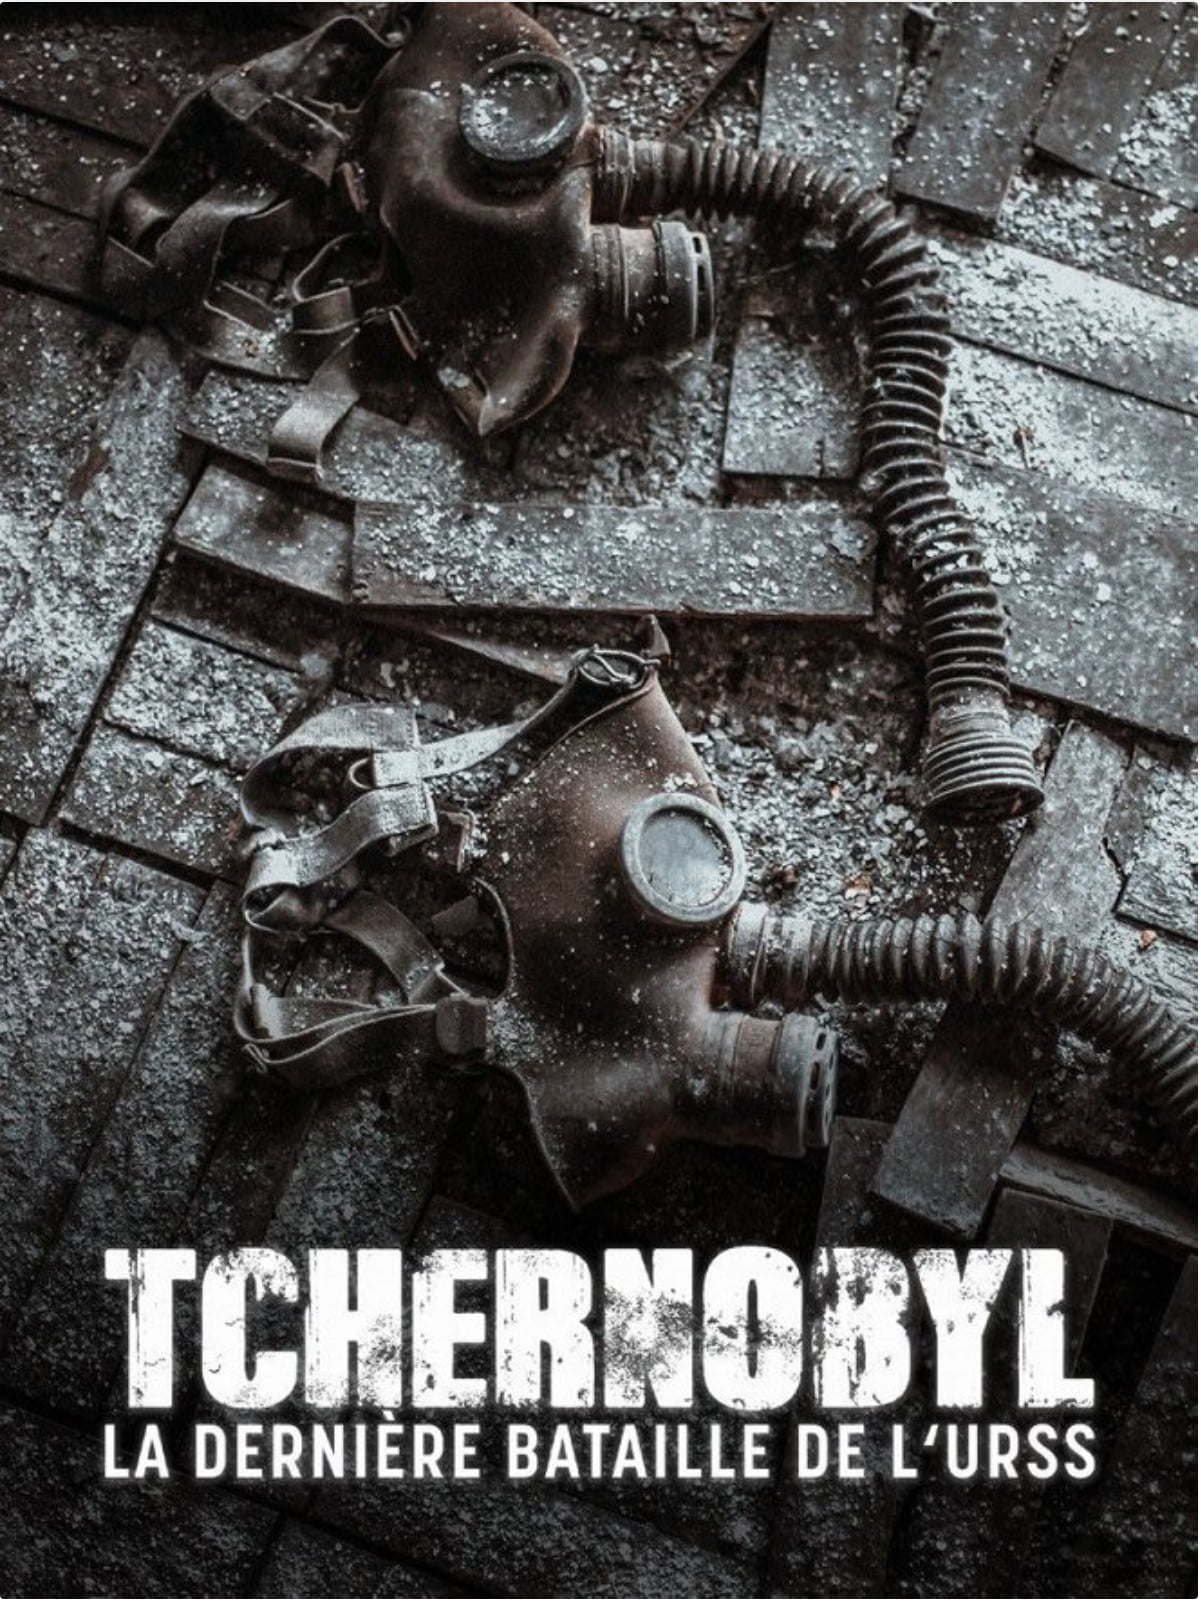 Plakát pro film “Černobyl”